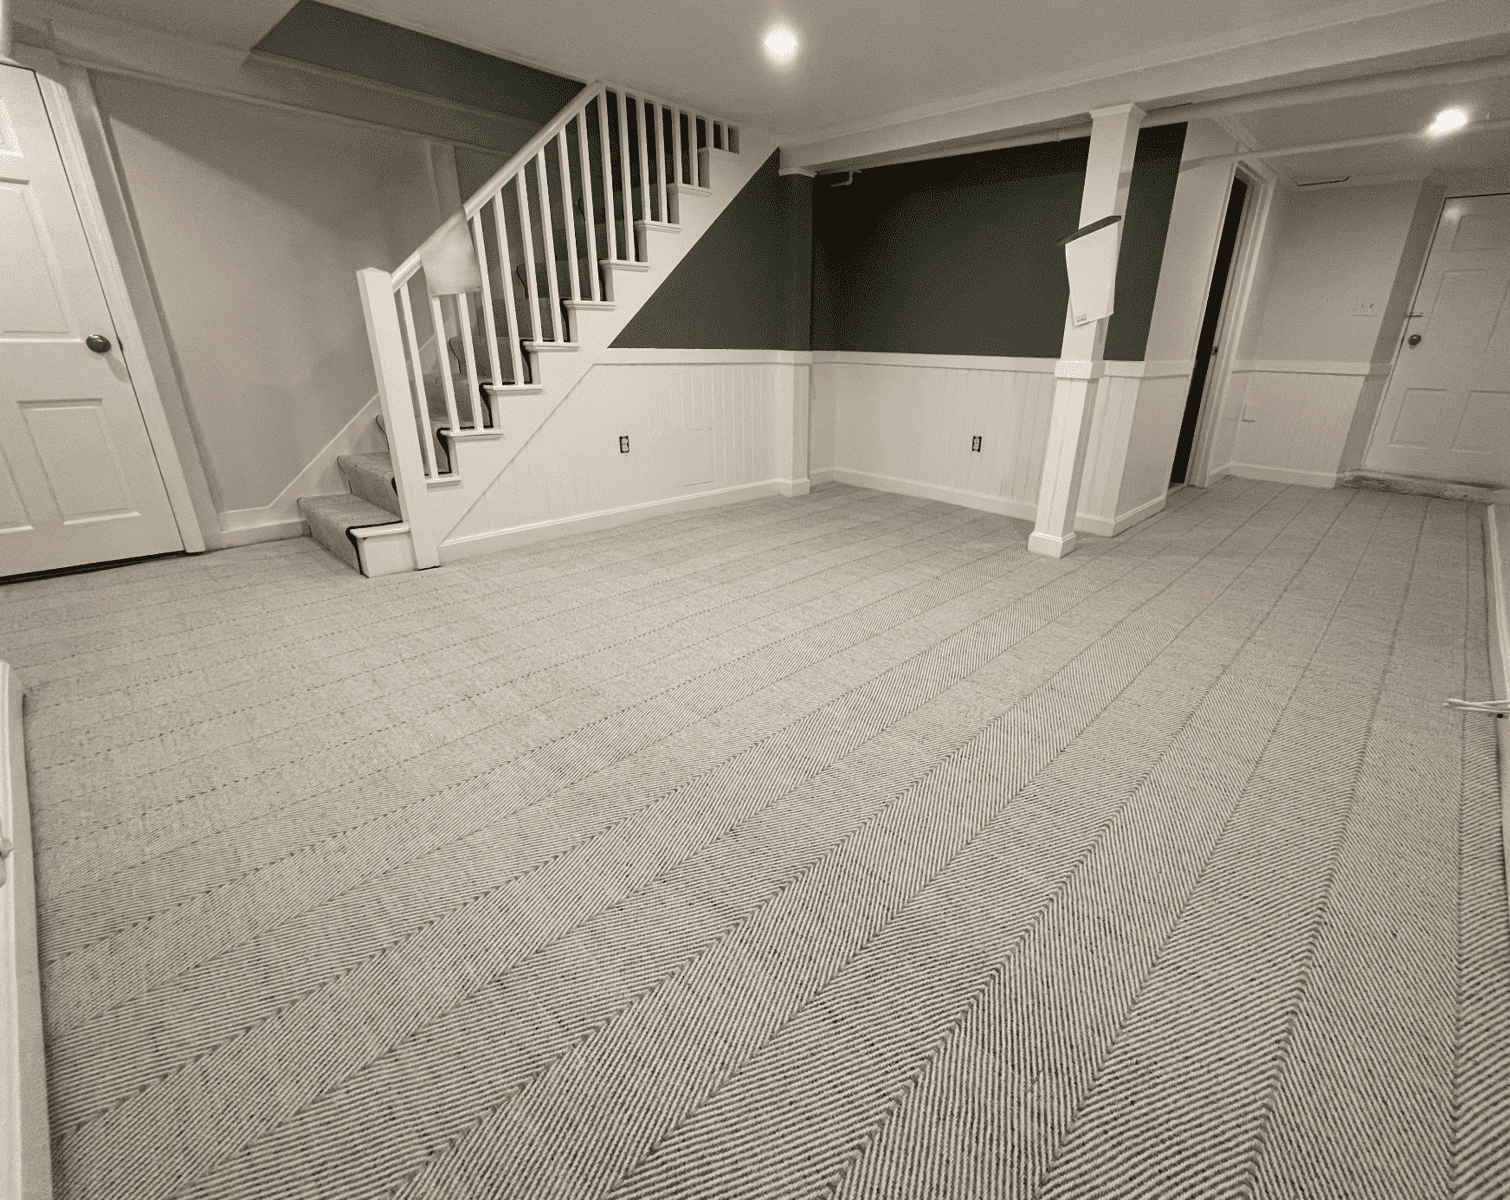 LVT vs. Carpet: What's Better for a Basement?